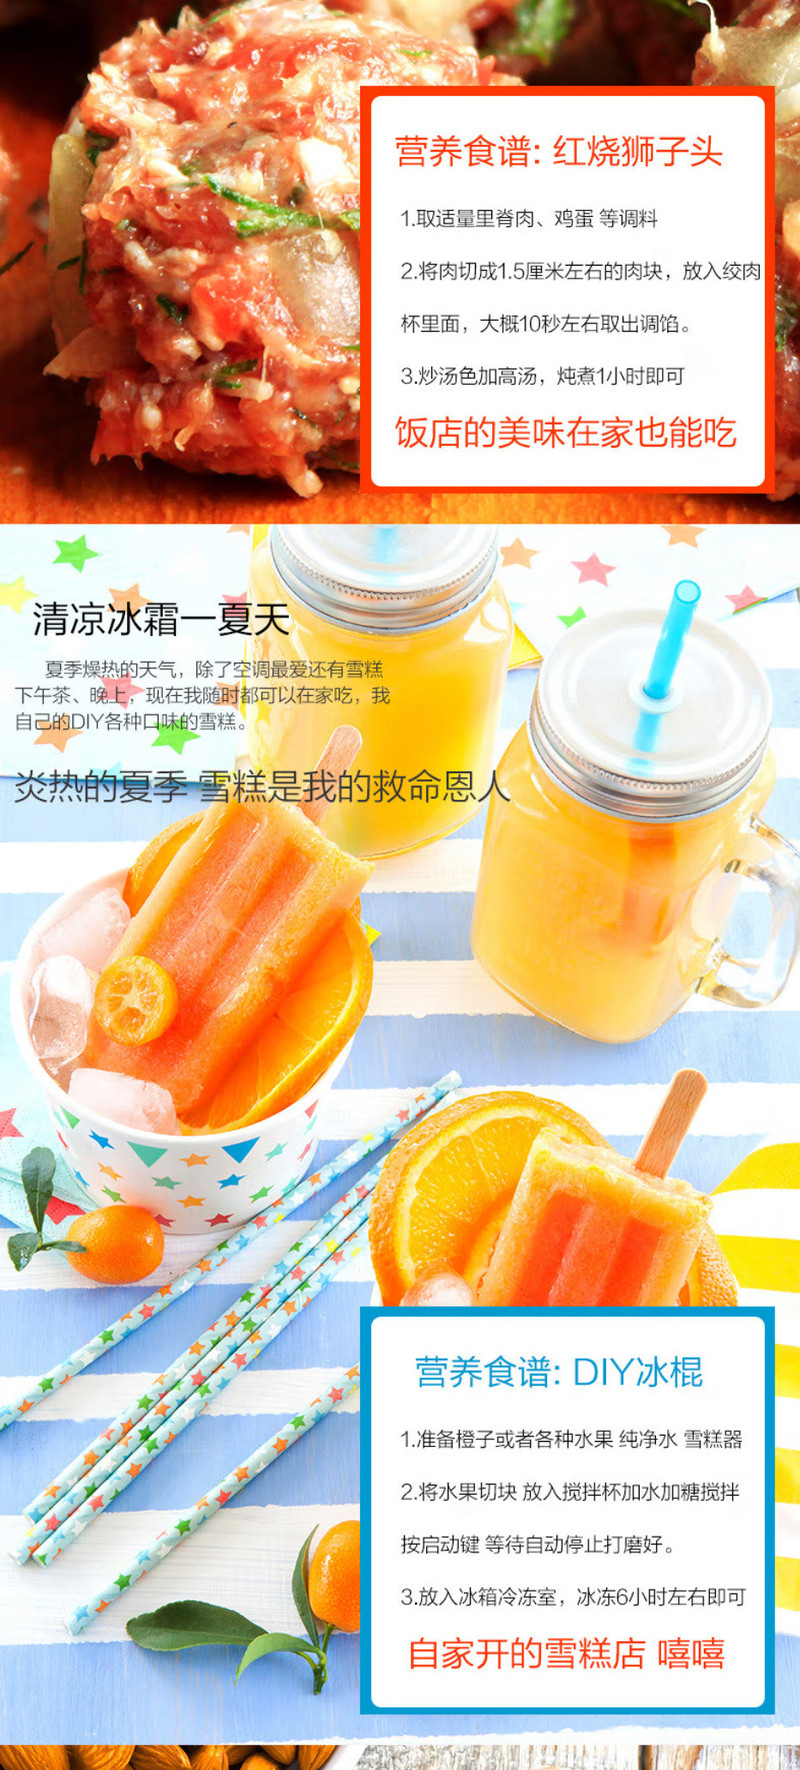 九阳/Joyoung 家用料理机多功能辅食机榨汁杯碎冰研磨果汁机 JYL-C020E